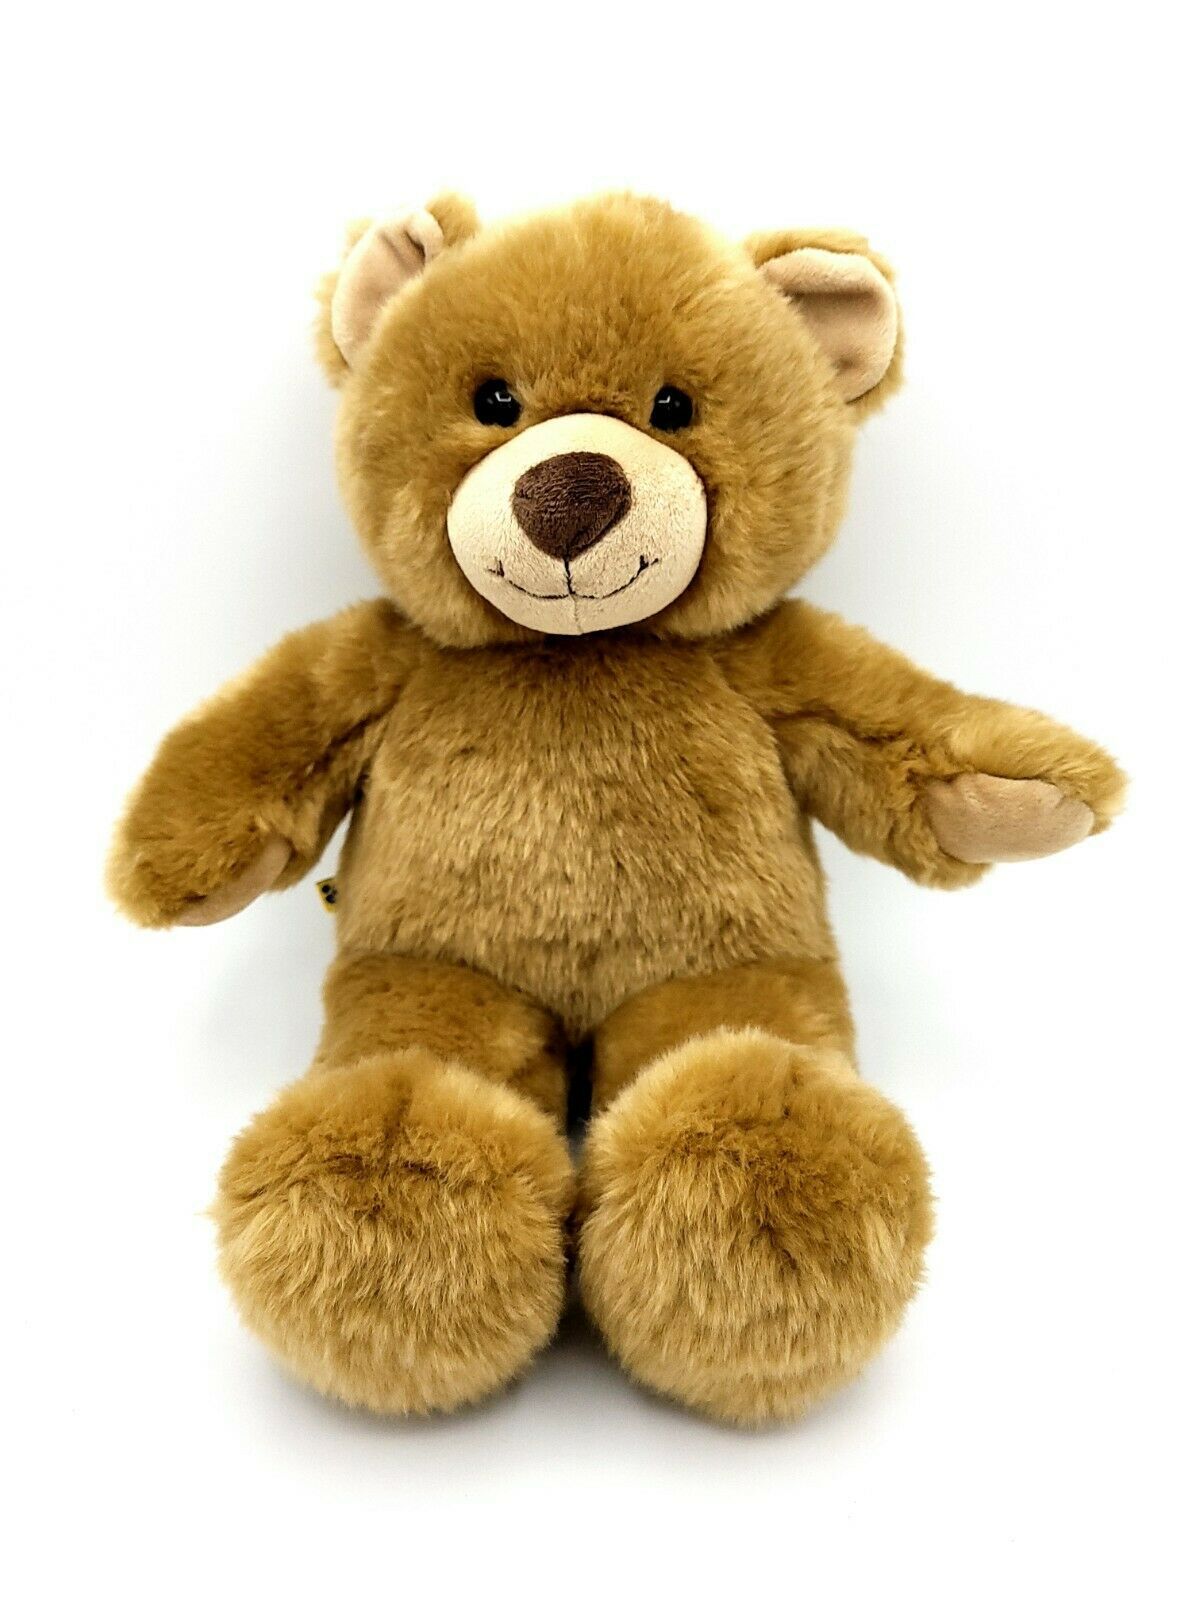 Build A Bear Workshop Brown Tan Stuffed Plush 15 Inch Teddy Bear Animal Toy BABW 